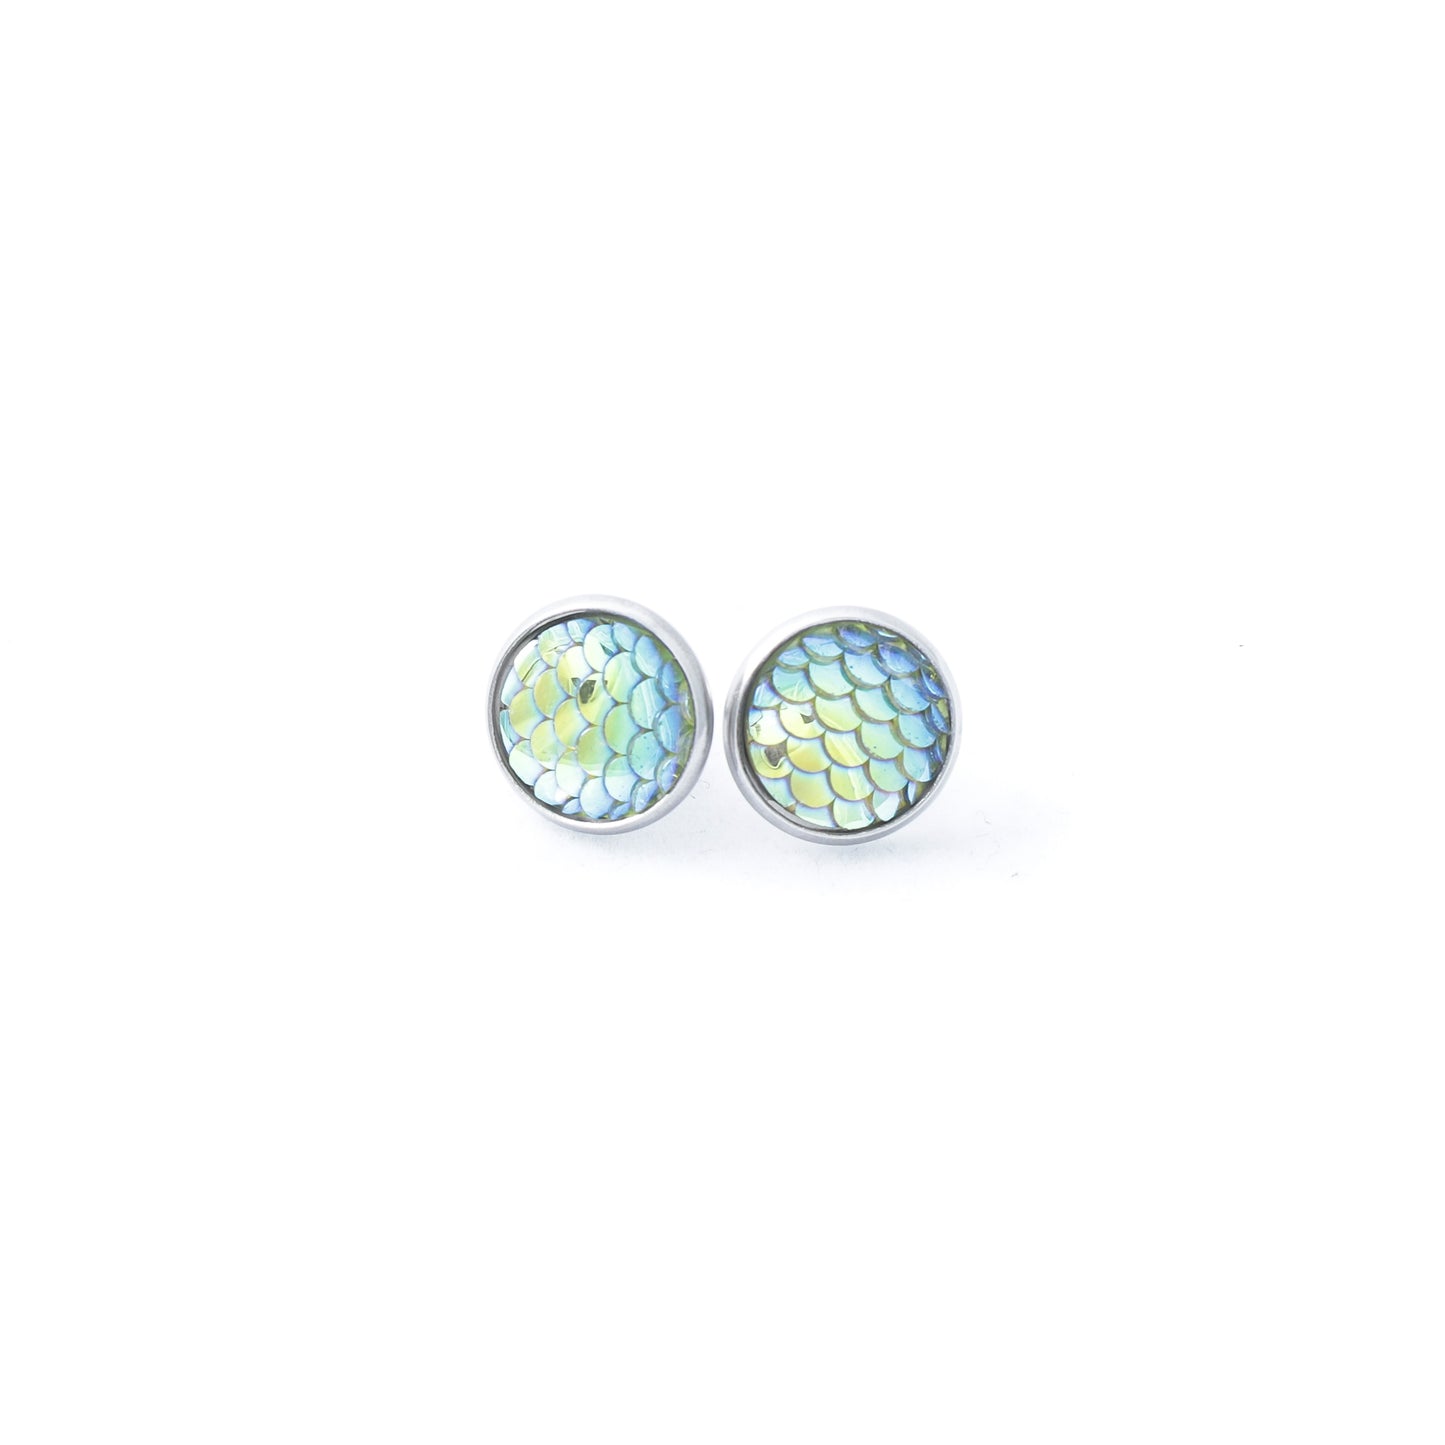 Whimsy’s Jewels | Mermaid Stud Earrings